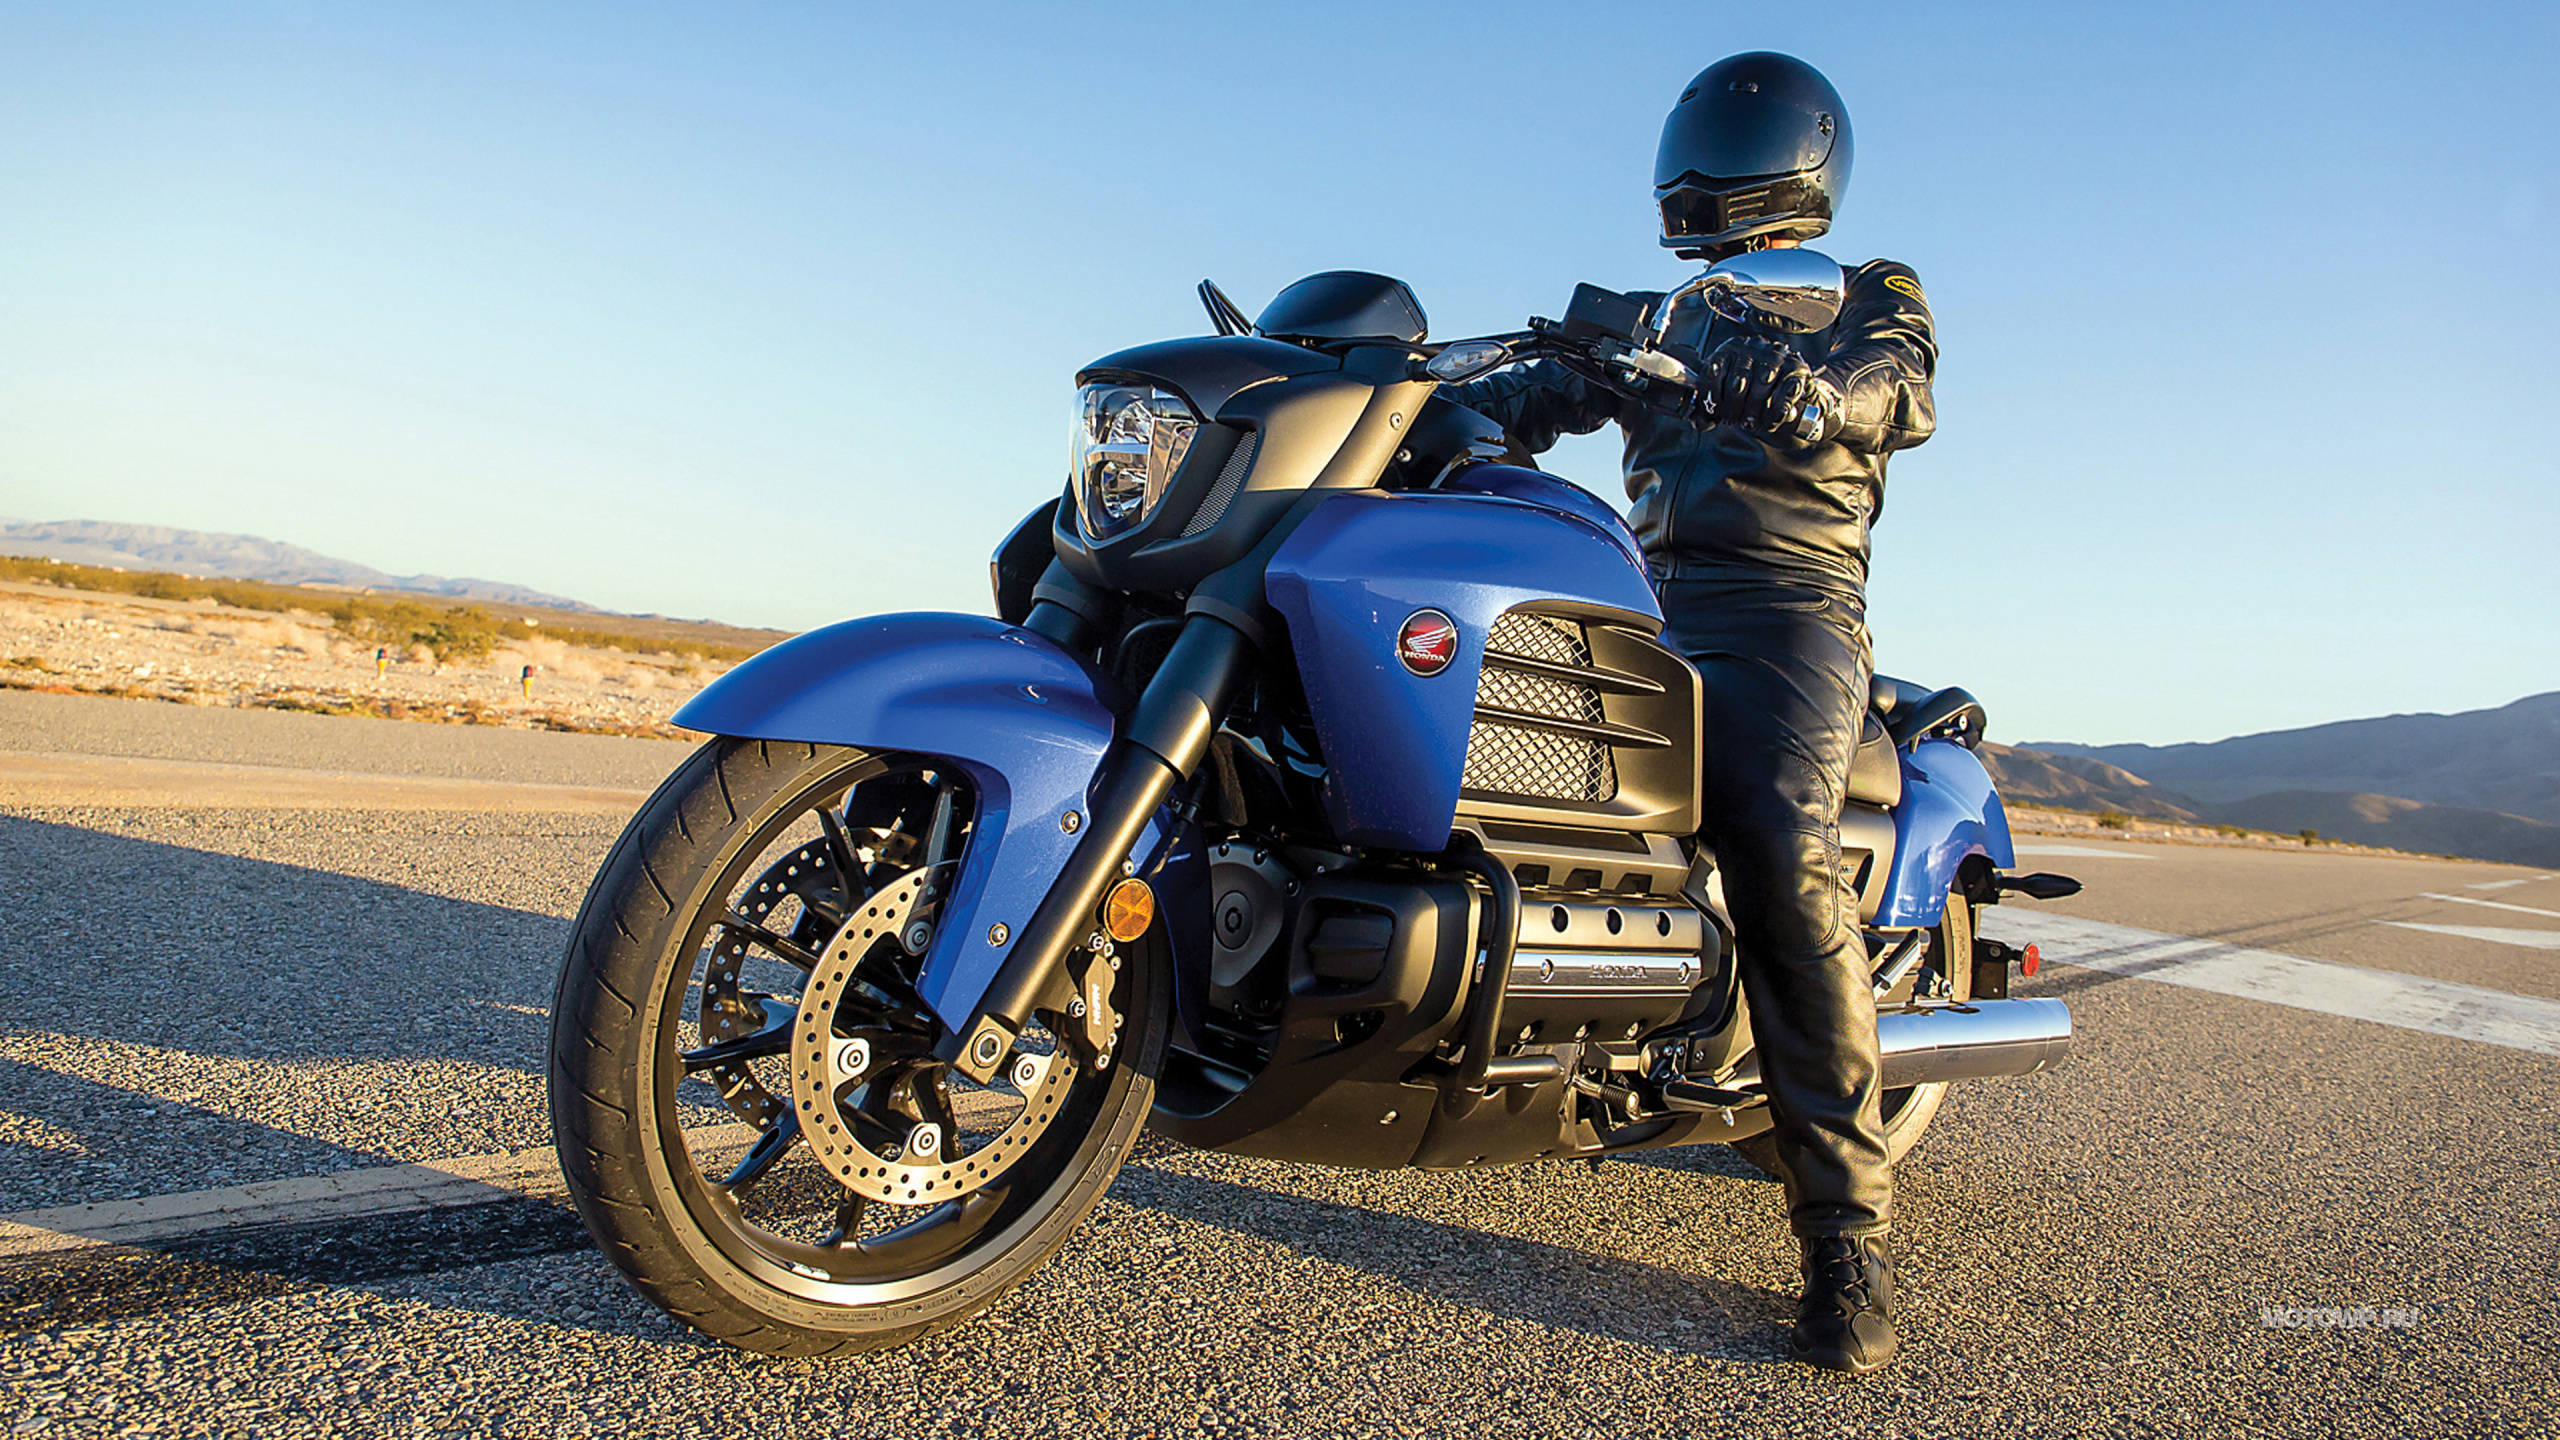 Hombre Con Chaqueta de Cuero Negro y Pantalón Negro Montando Motocicleta Azul y Negra. Wallpaper in 2560x1440 Resolution